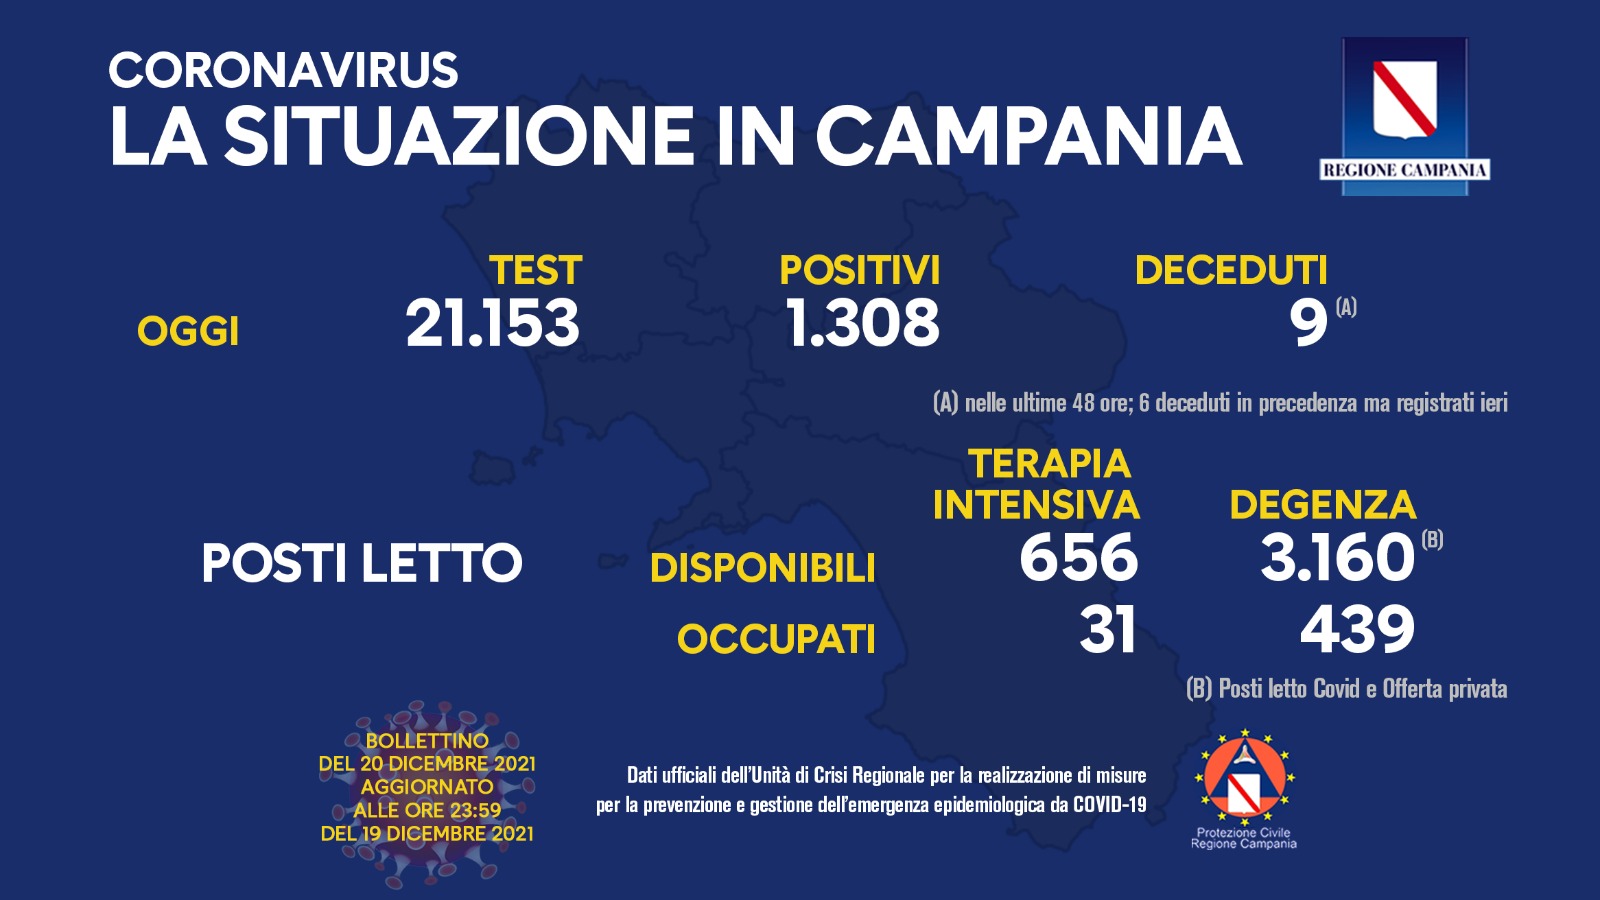 Regione Campania: Coronavirus, Unità di Crisi, Bollettino, 1308 casi positivi, 9 decessi